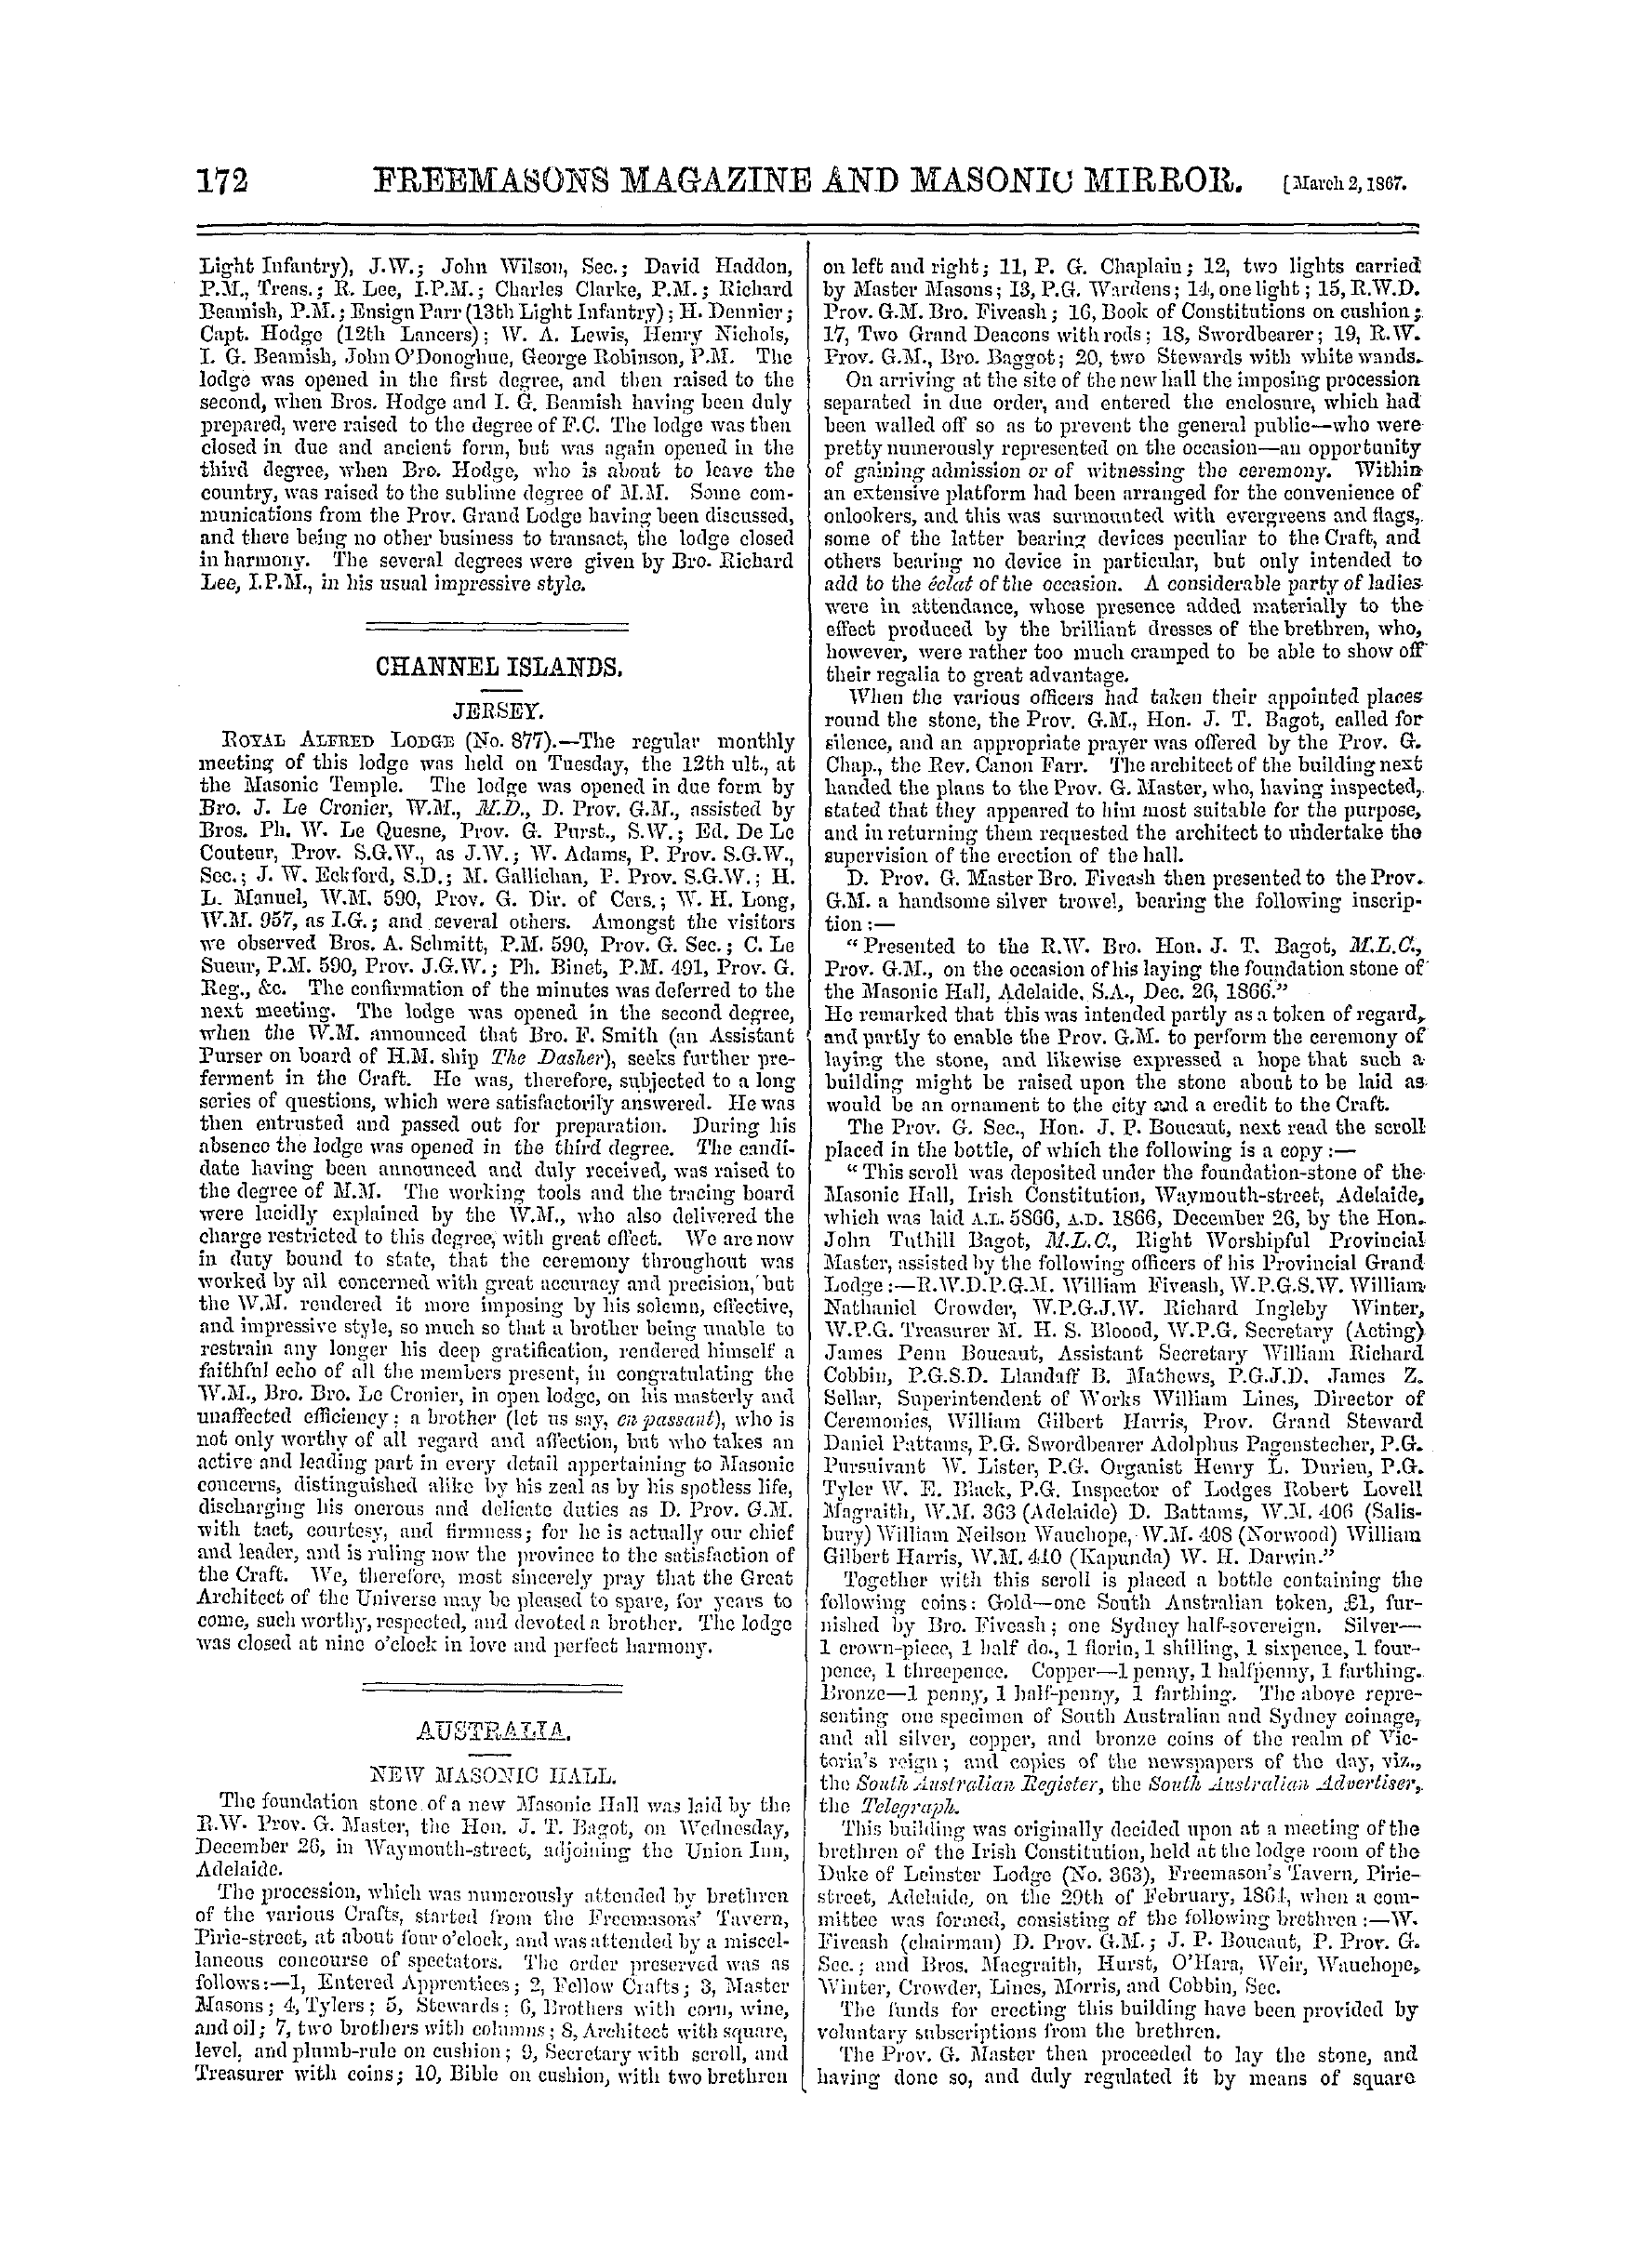 The Freemasons' Monthly Magazine: 1867-03-02 - Ireland.